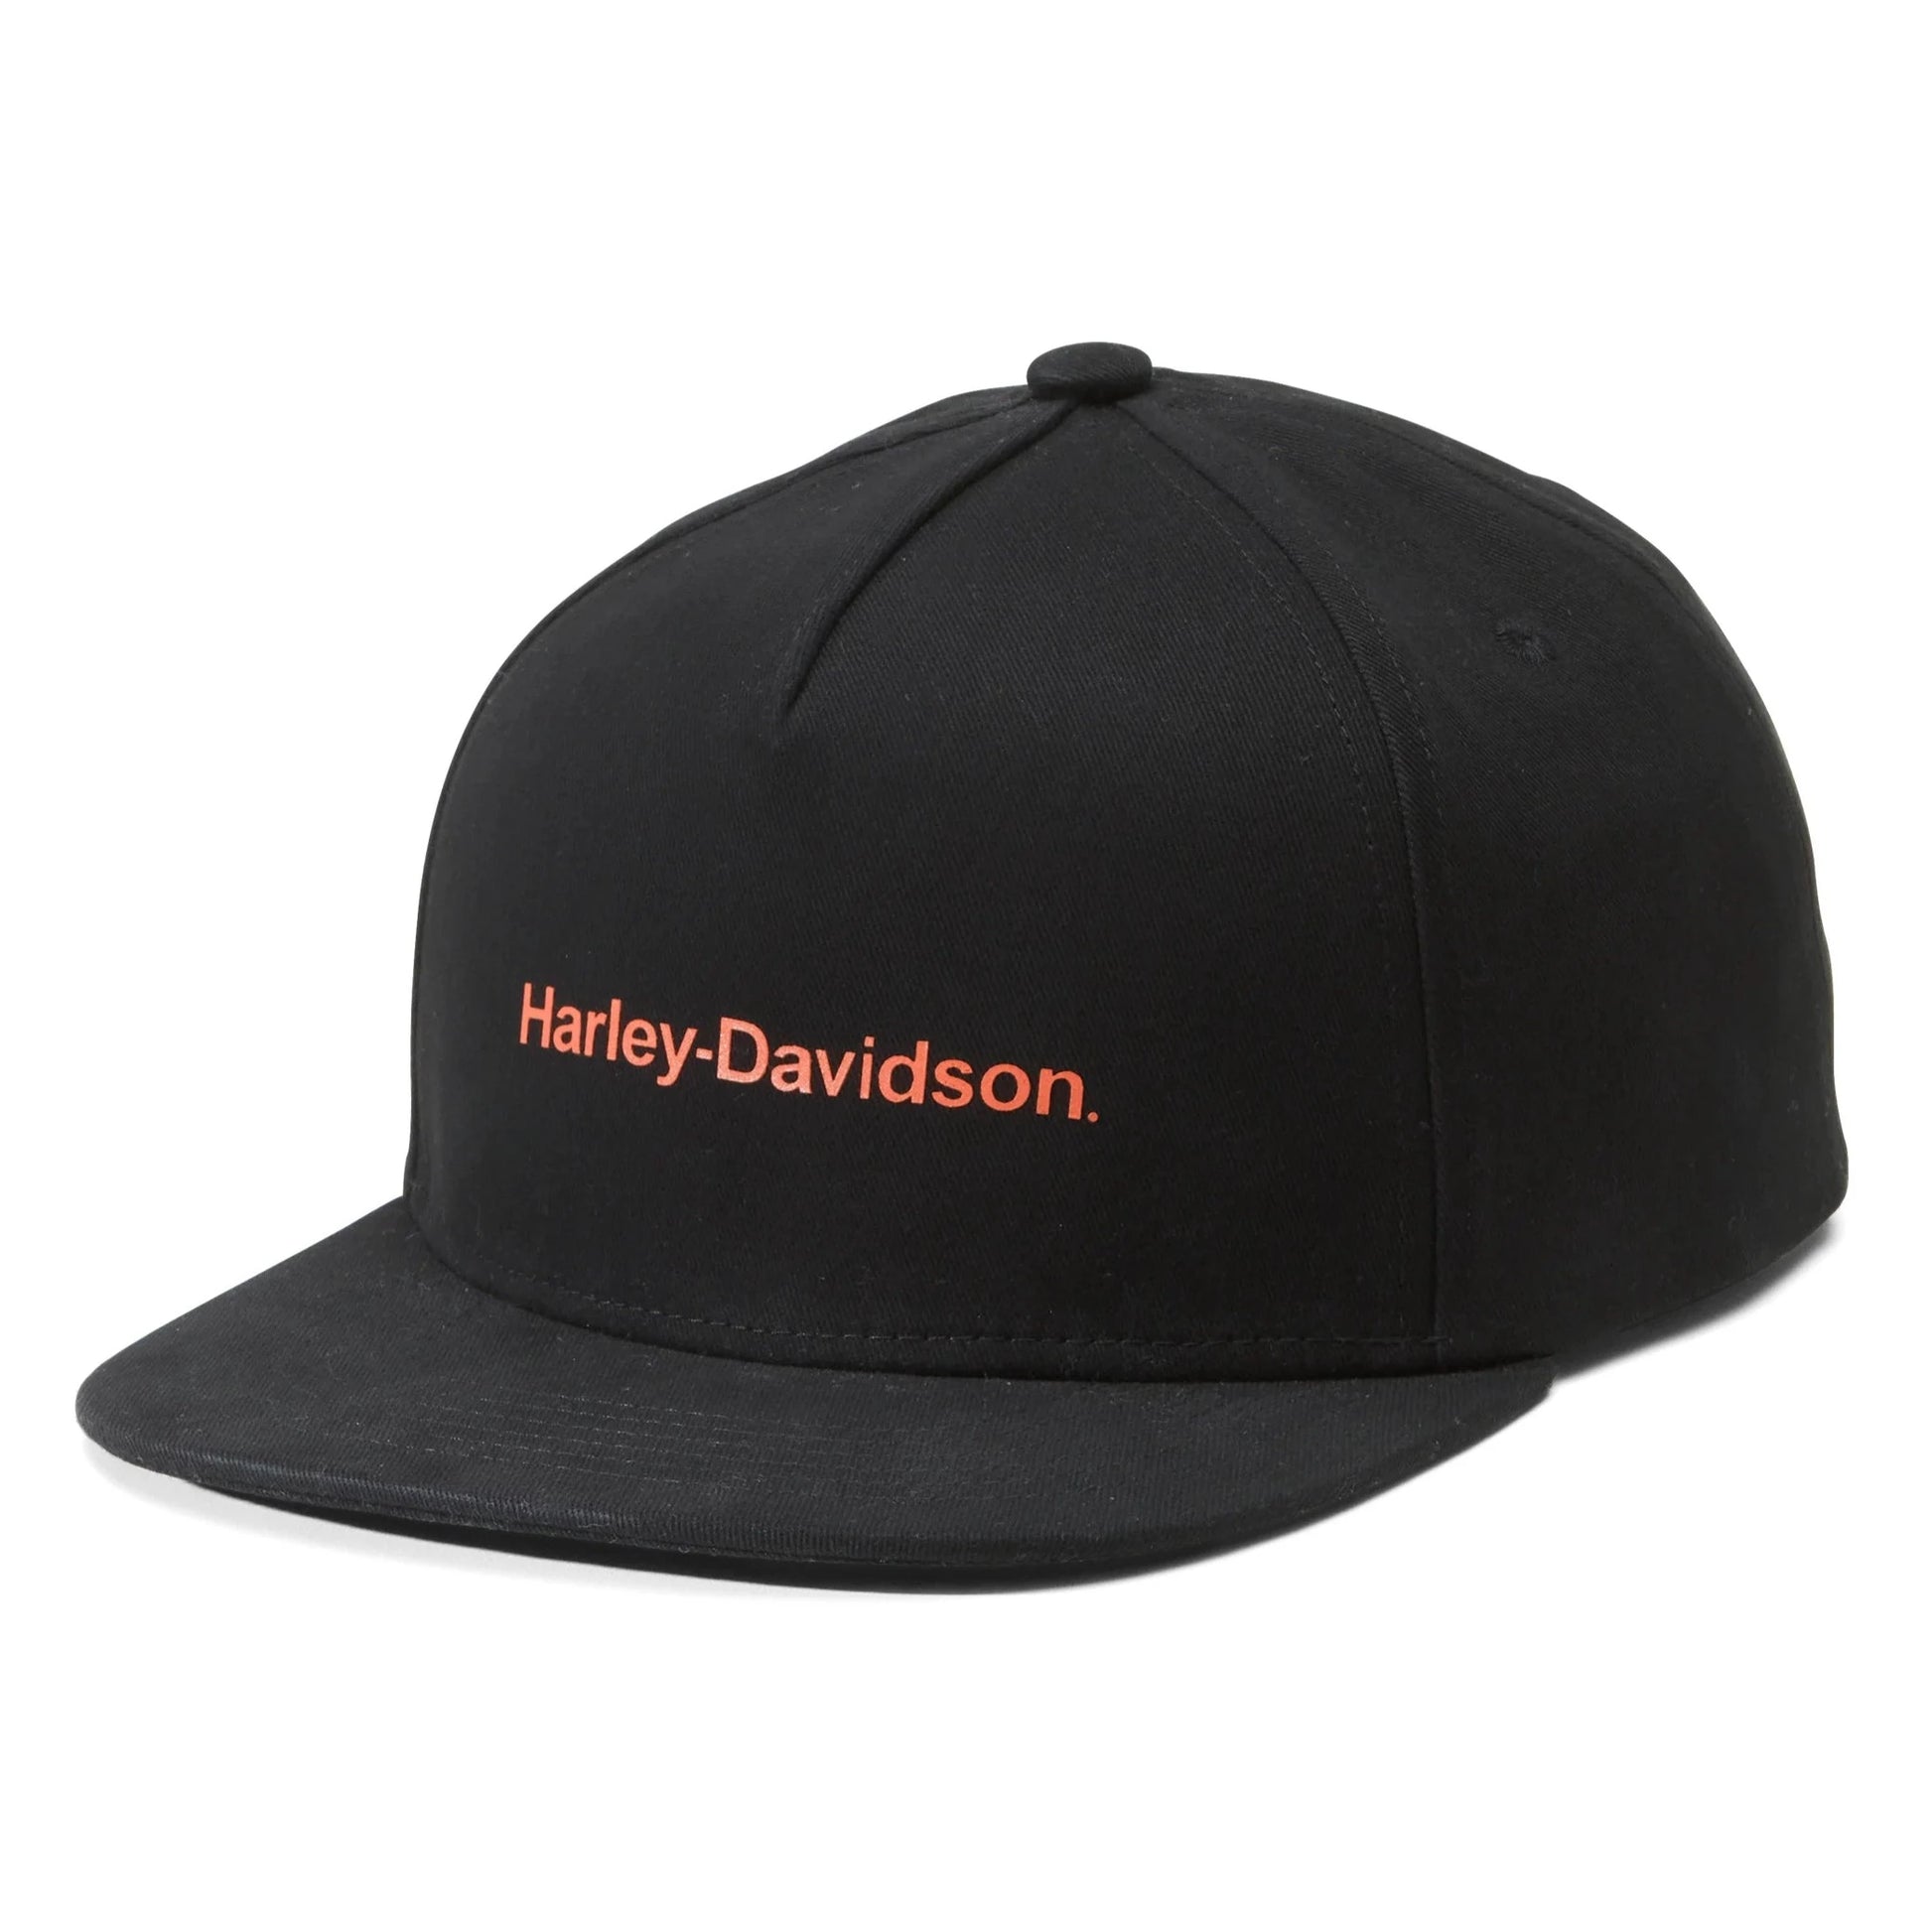 Harley-Davidson Men's Snapback Cap/Hat, Black, 97624-23VM (front)